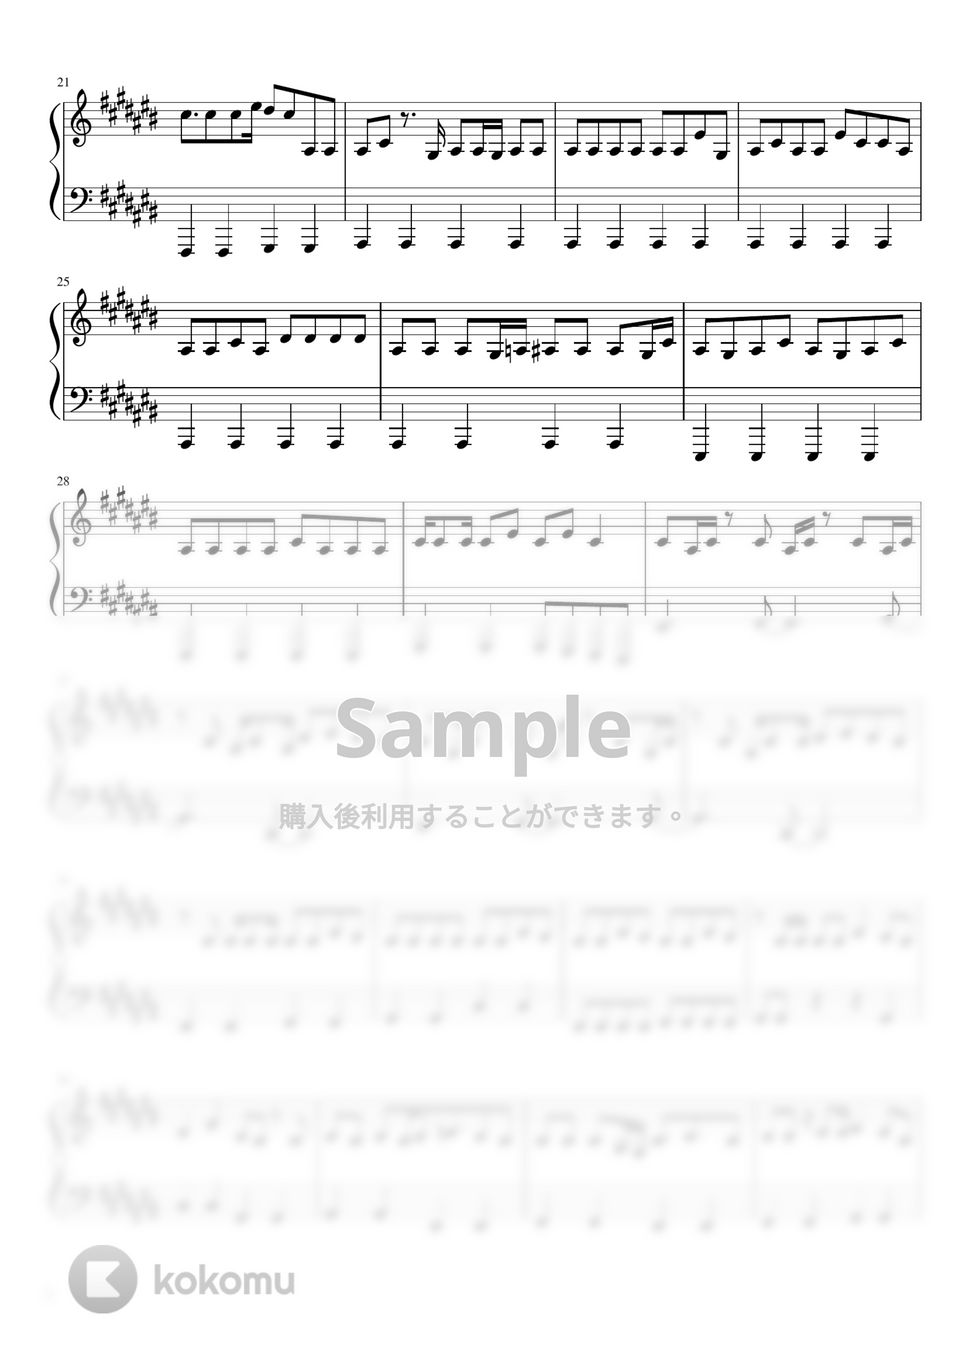 すとぷり - Streamer (ピアノソロ譜) by 萌や氏